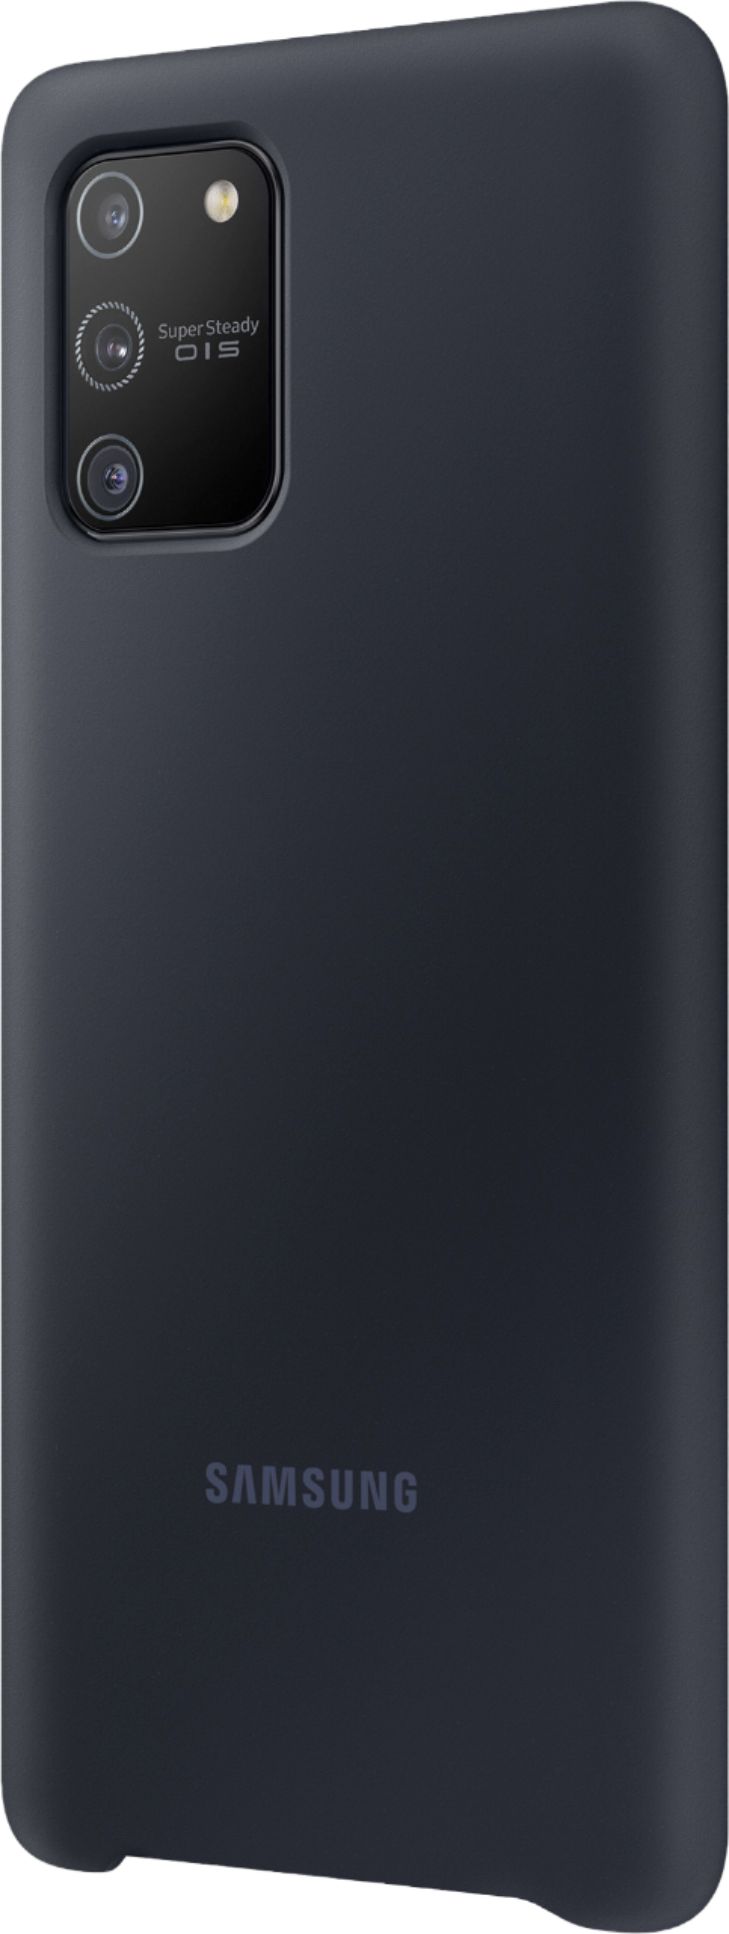 Galaxy S10e Silicone Cover, Black Mobile Accessories - EF